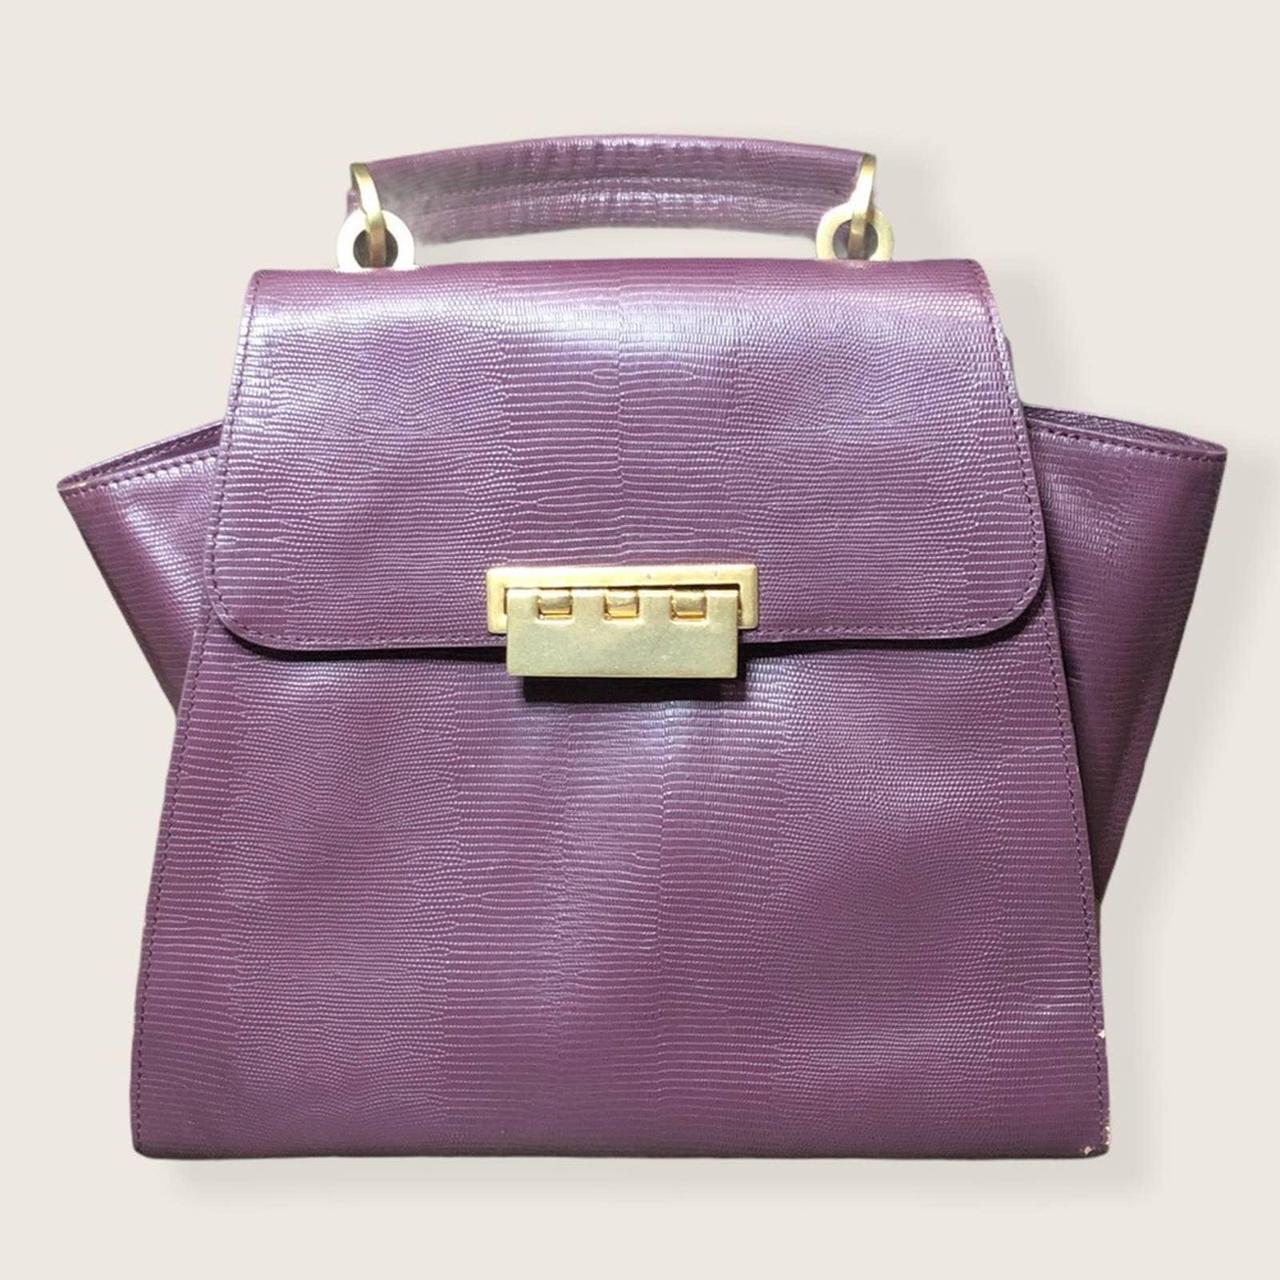 Zac Posen Men's Purple Bag (2)